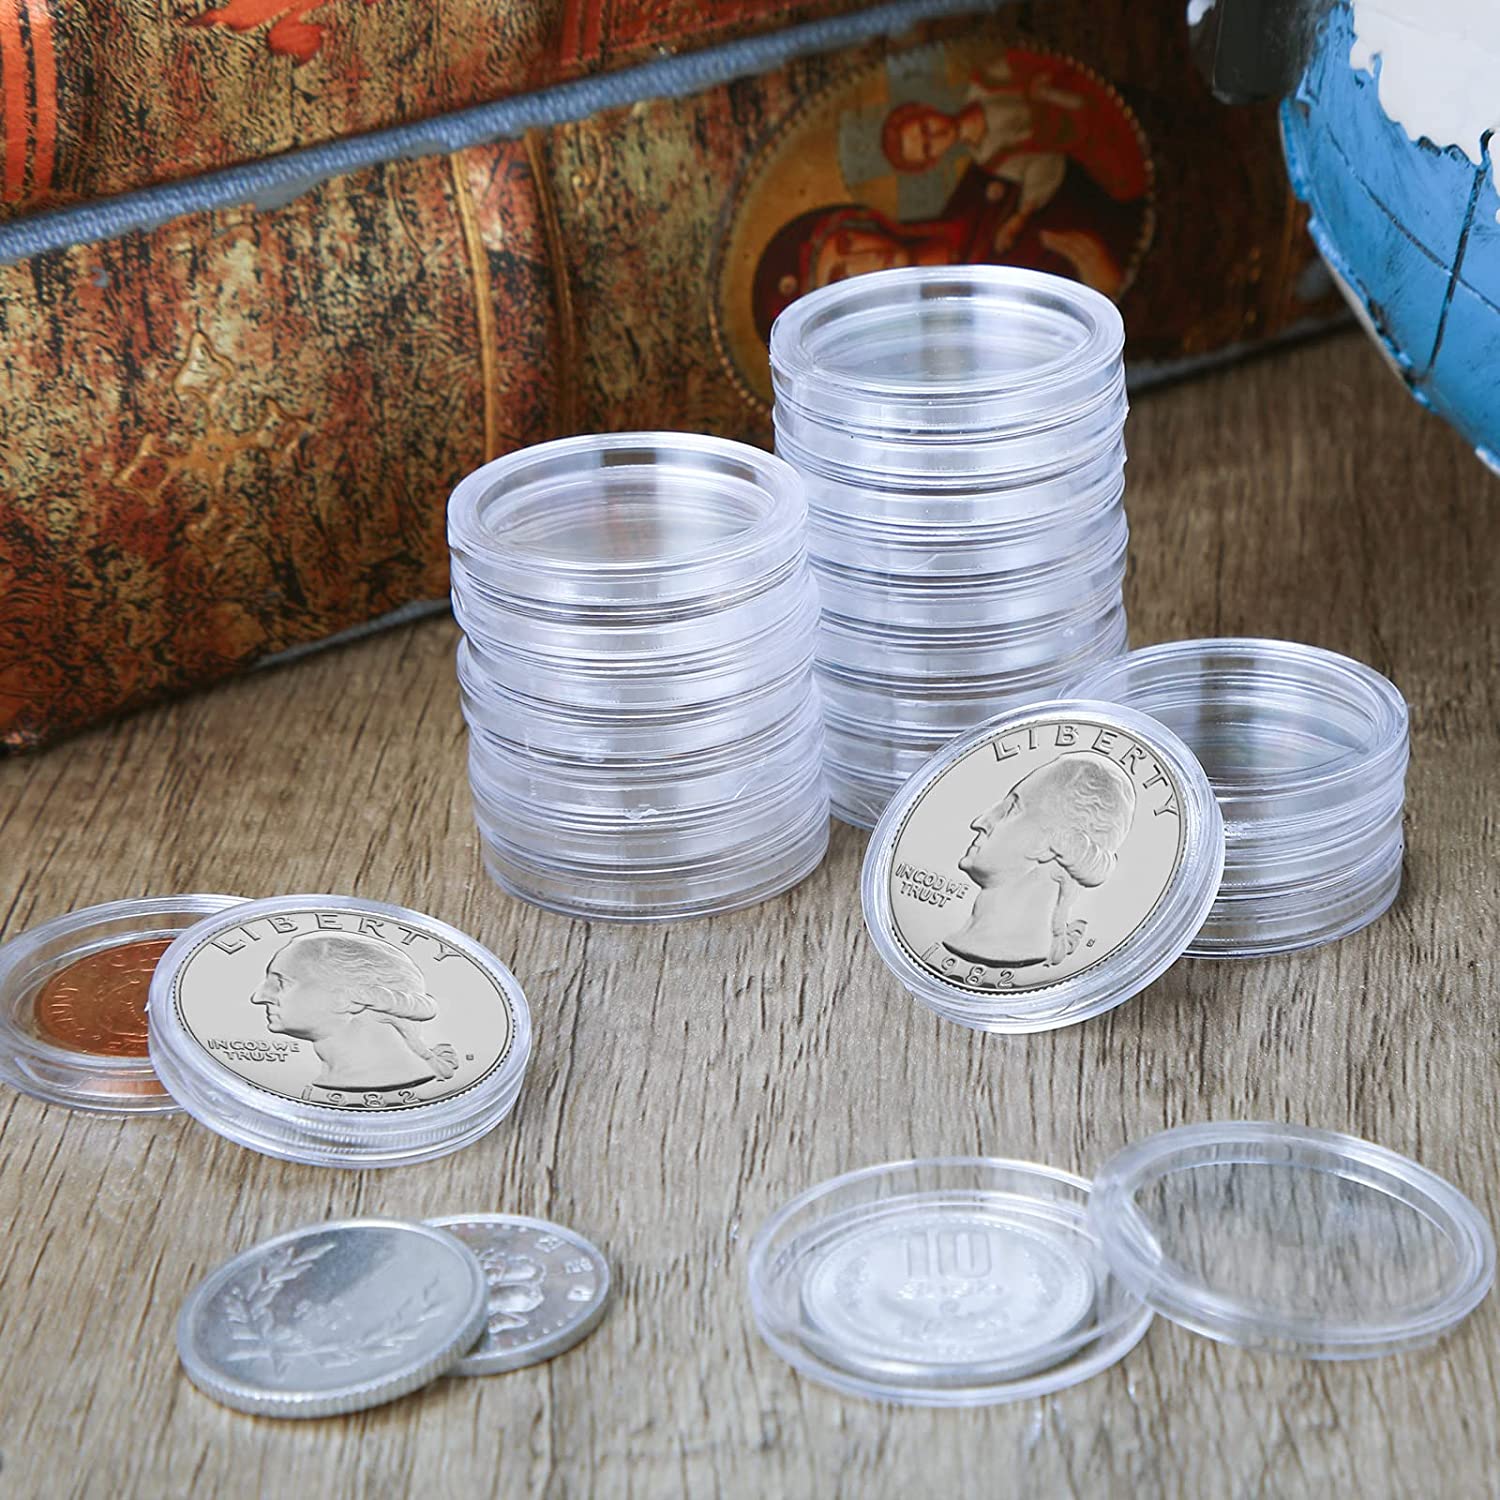 Diámetro 25mm 32mm 35mm 10 unids/lote caja transparente pequeña redonda porta  monedas para la colección